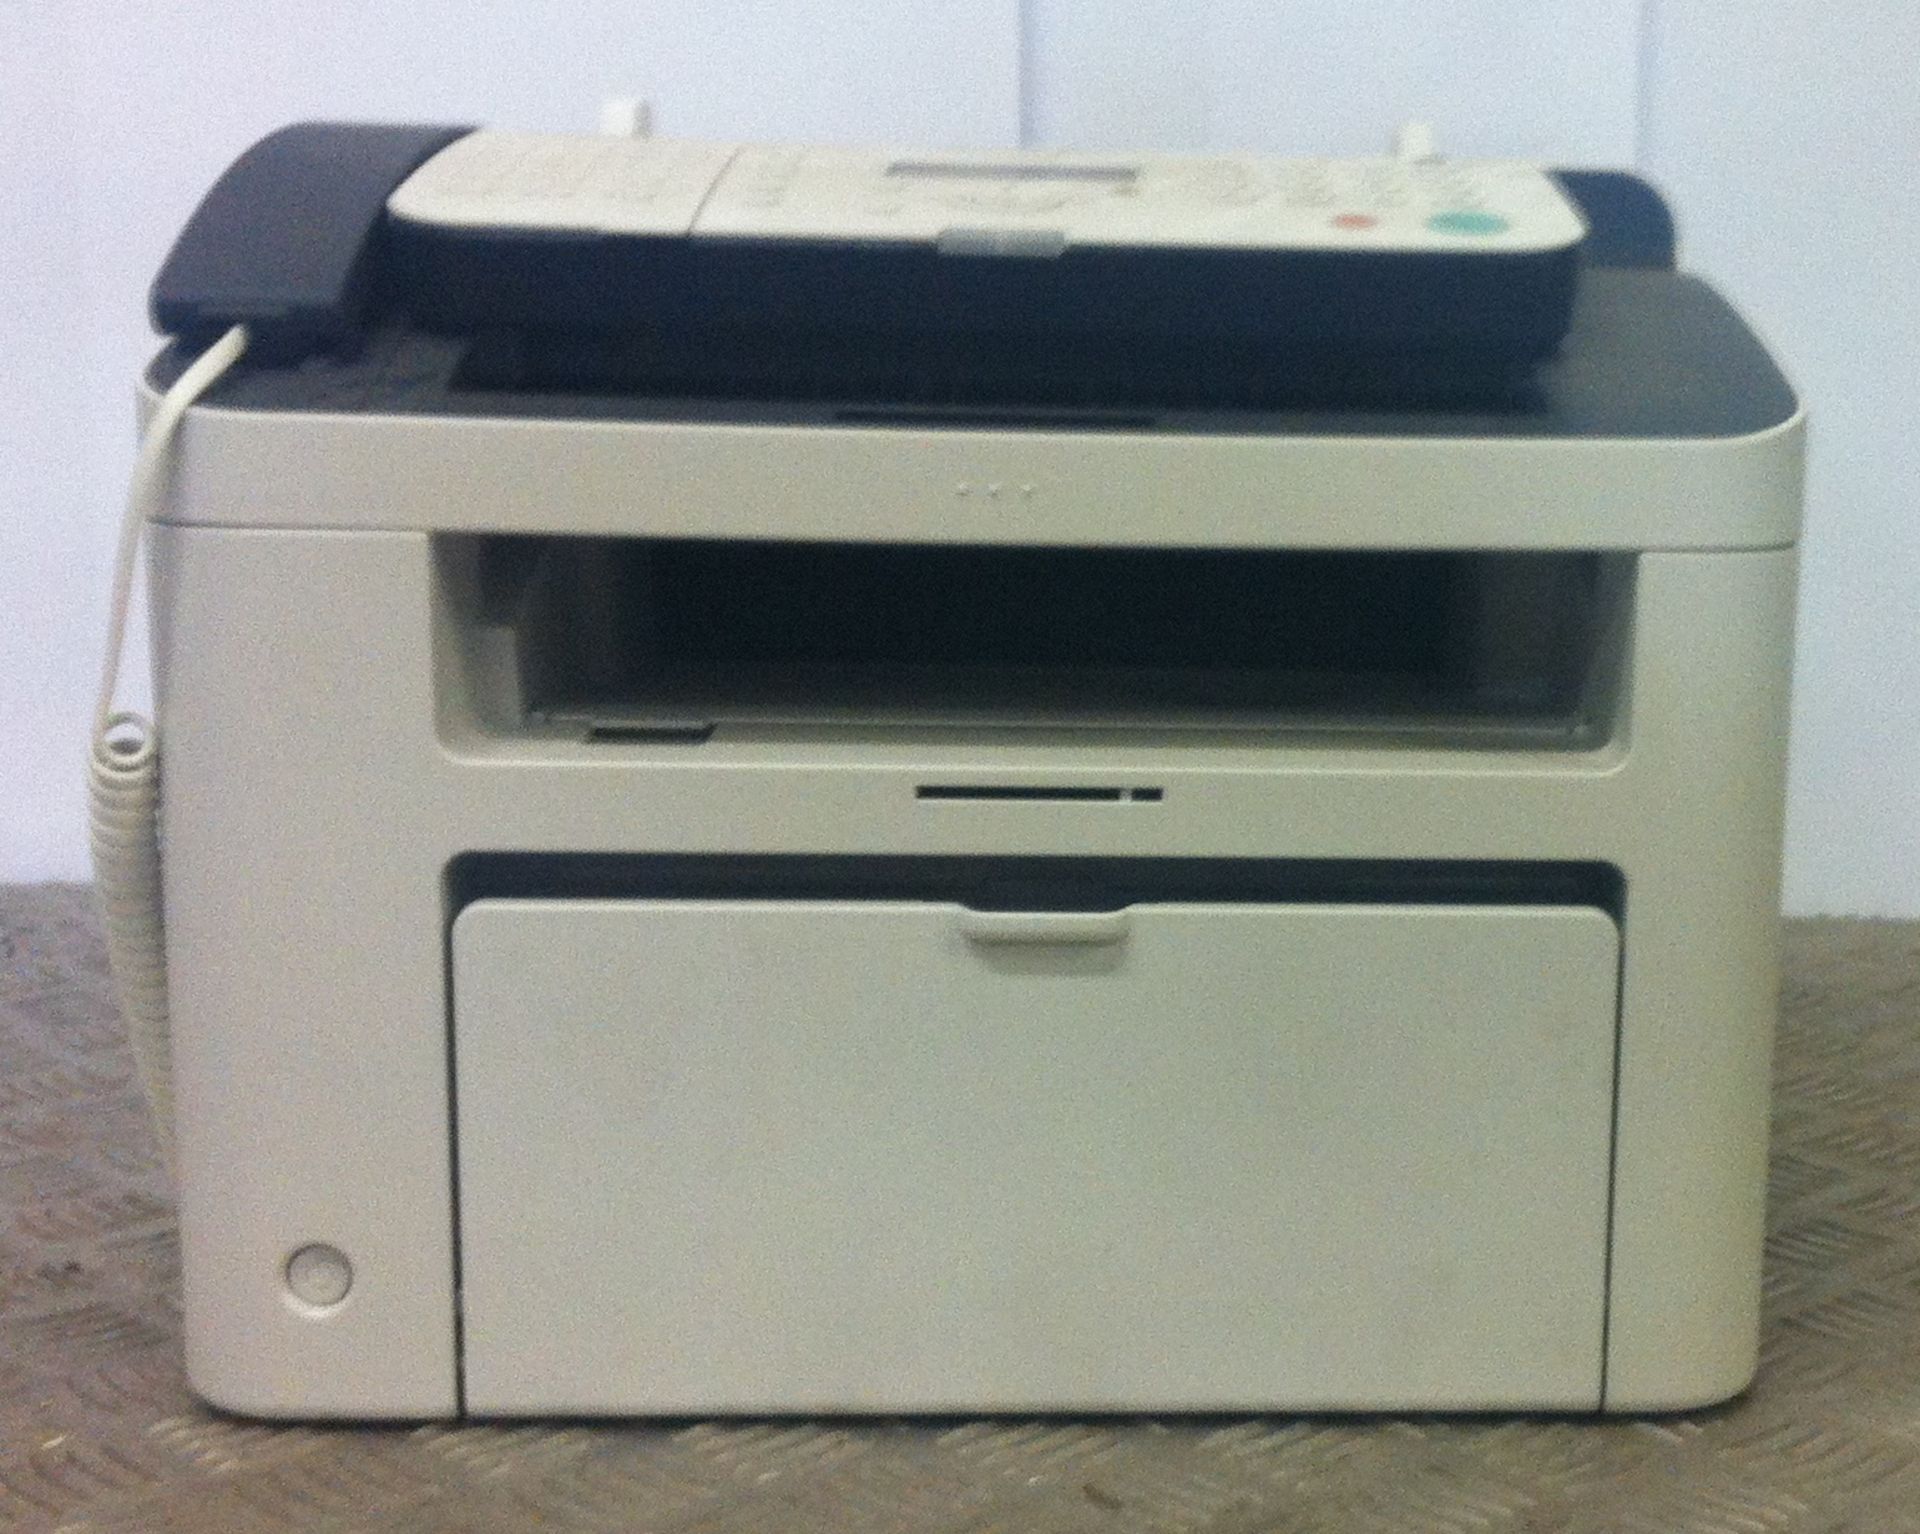 Canon Fax Machine: Model F162002 - Image 2 of 3